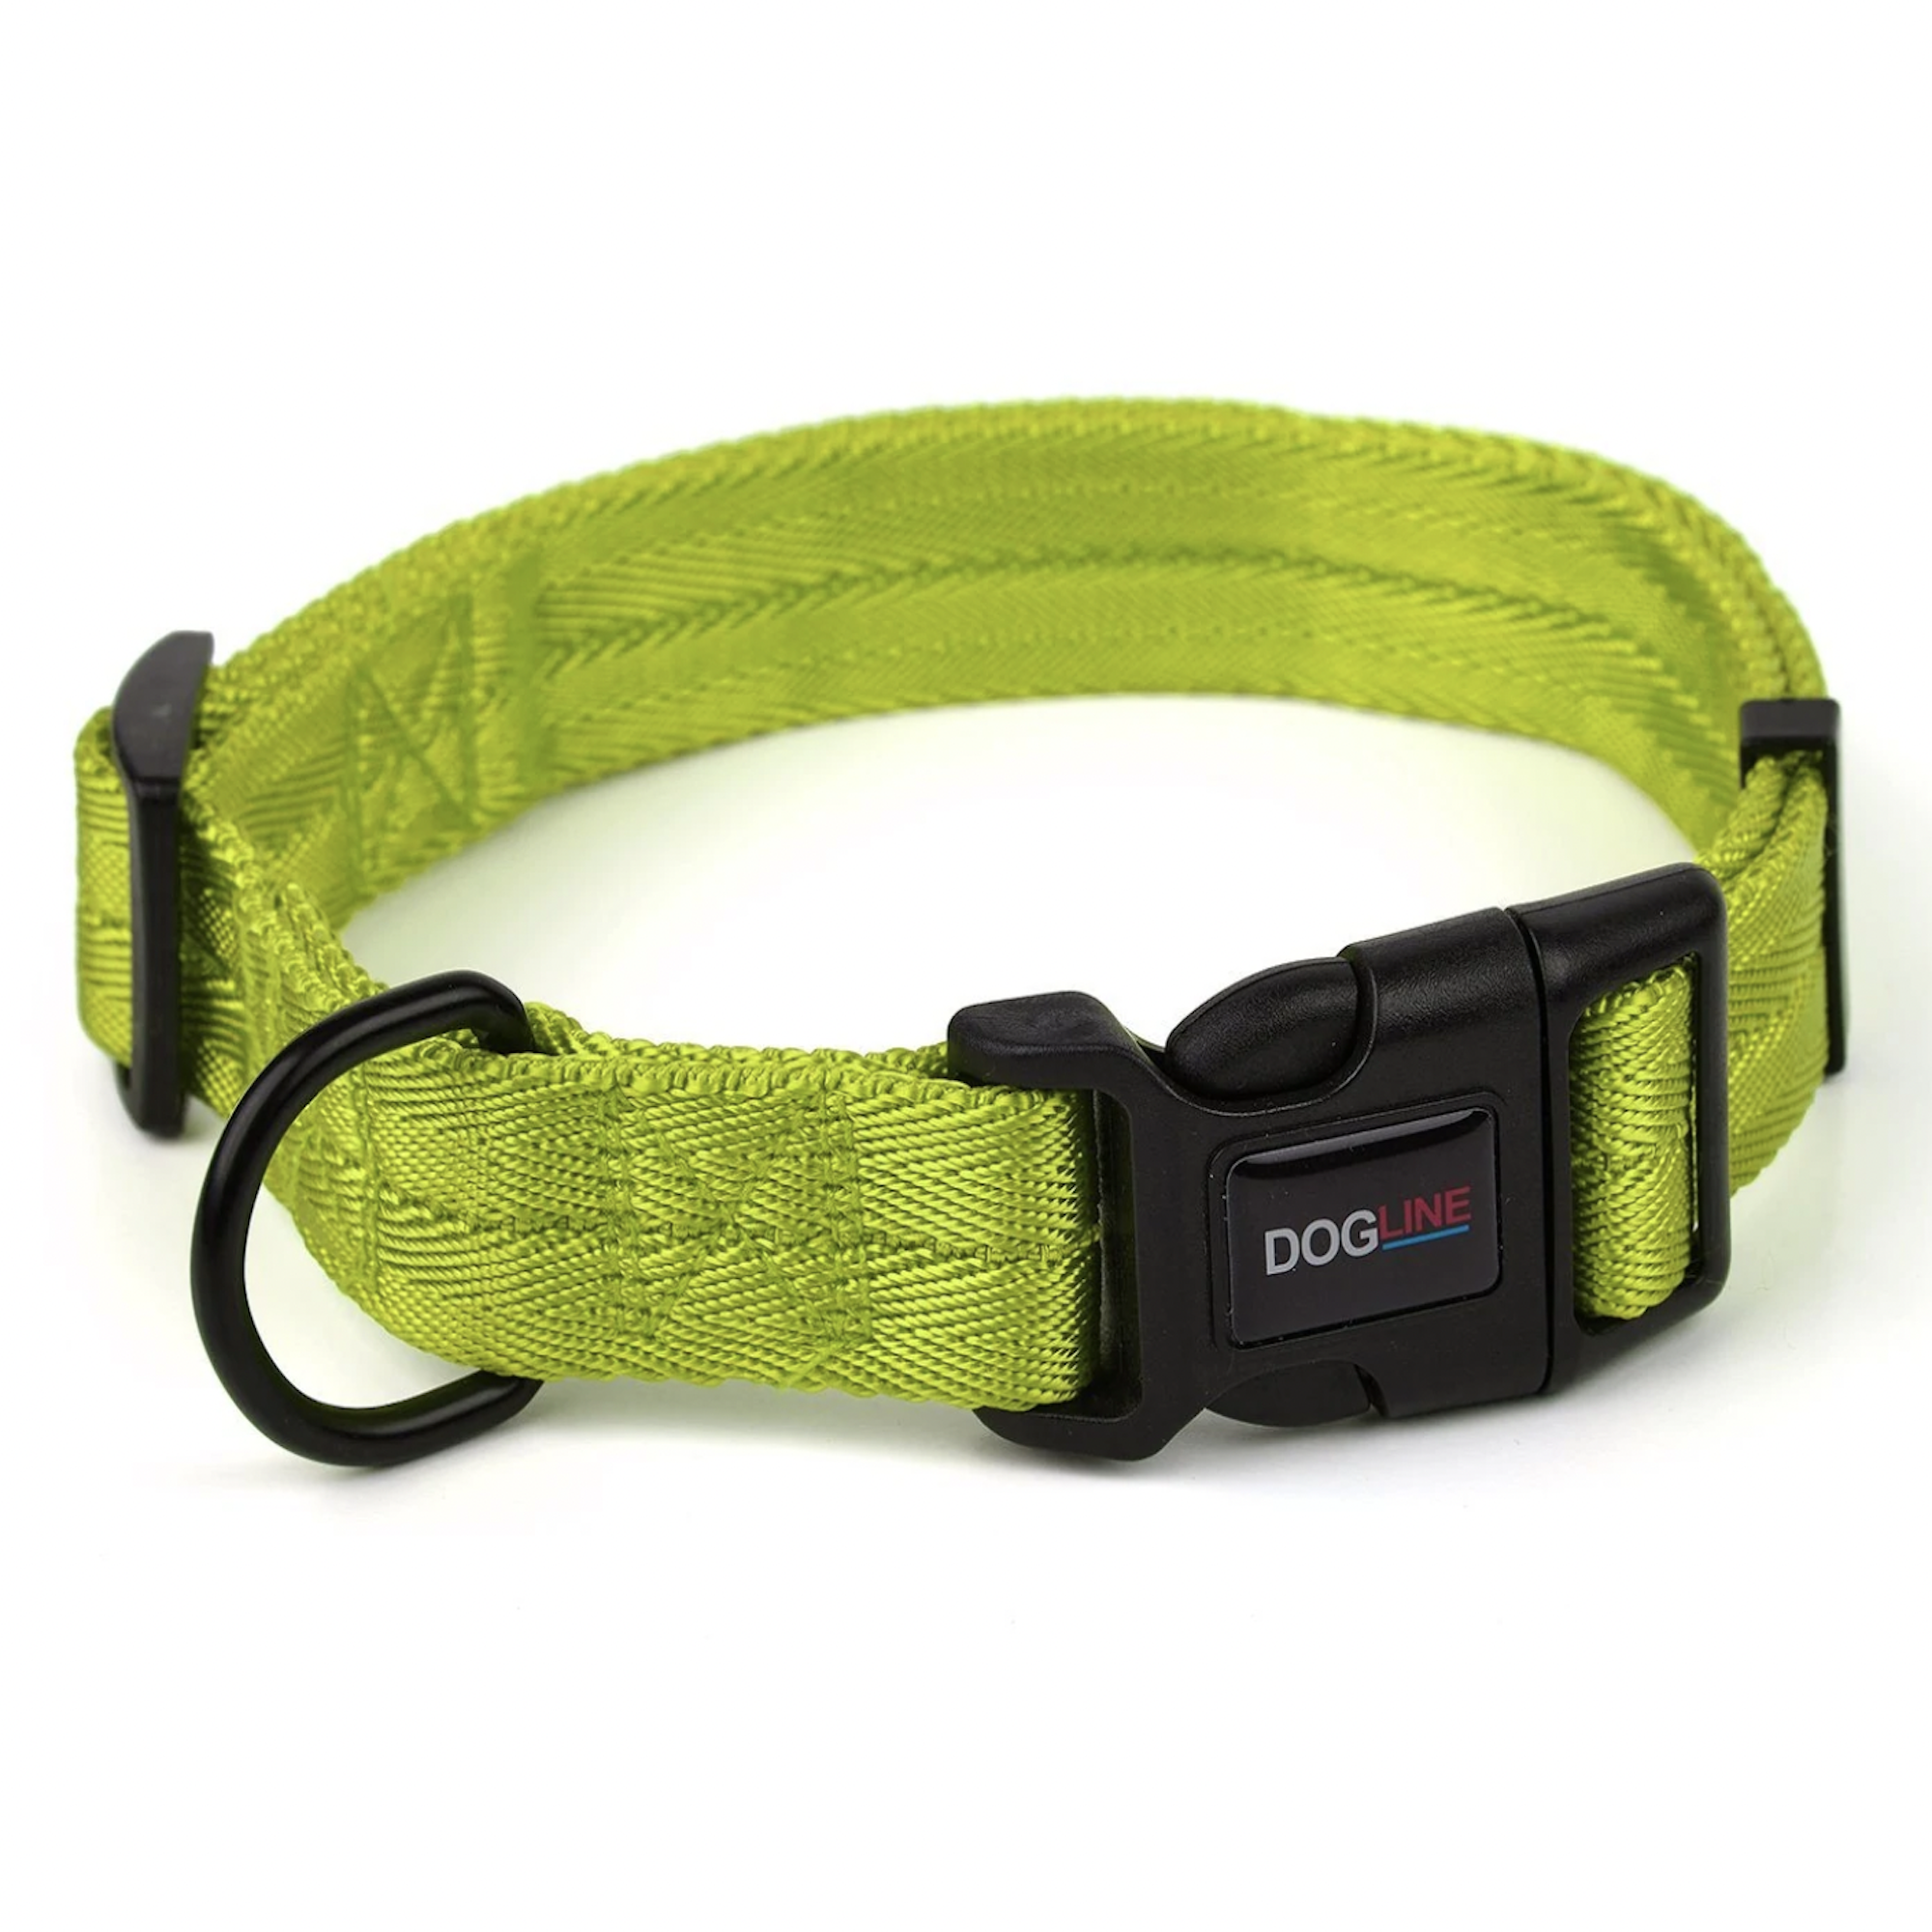 Dogline Nylon Dog Collar - Lime Green